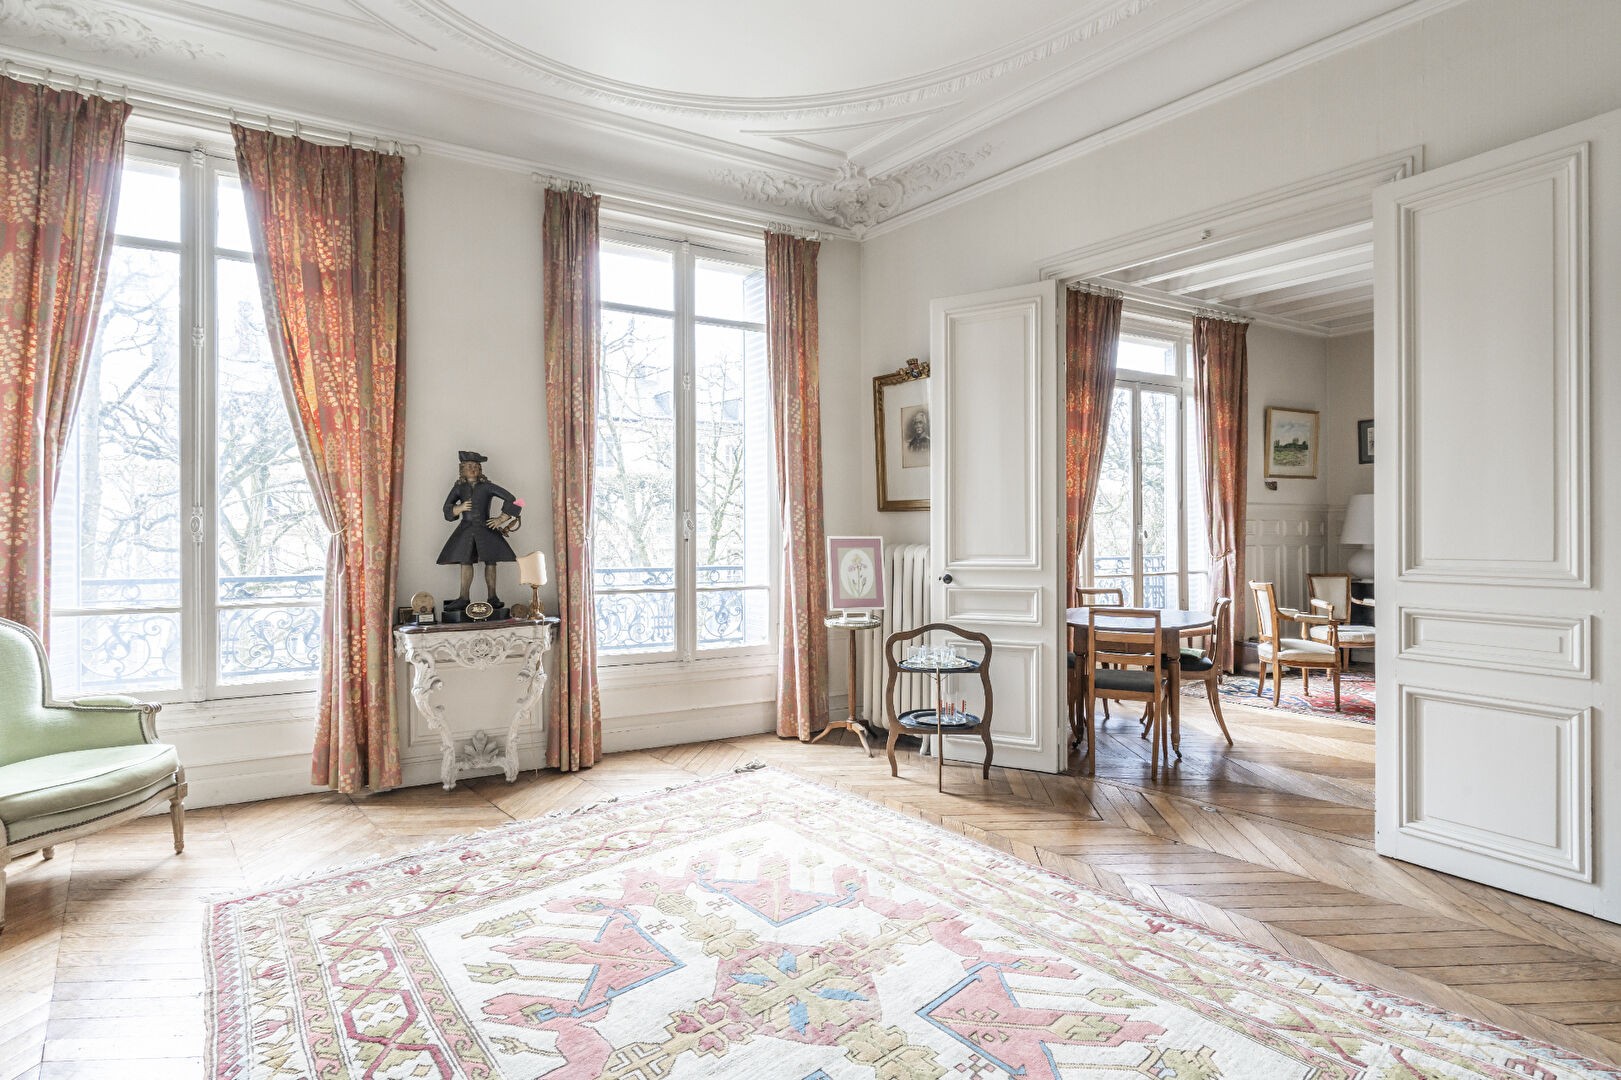 Vente Appartement à Versailles 5 pièces